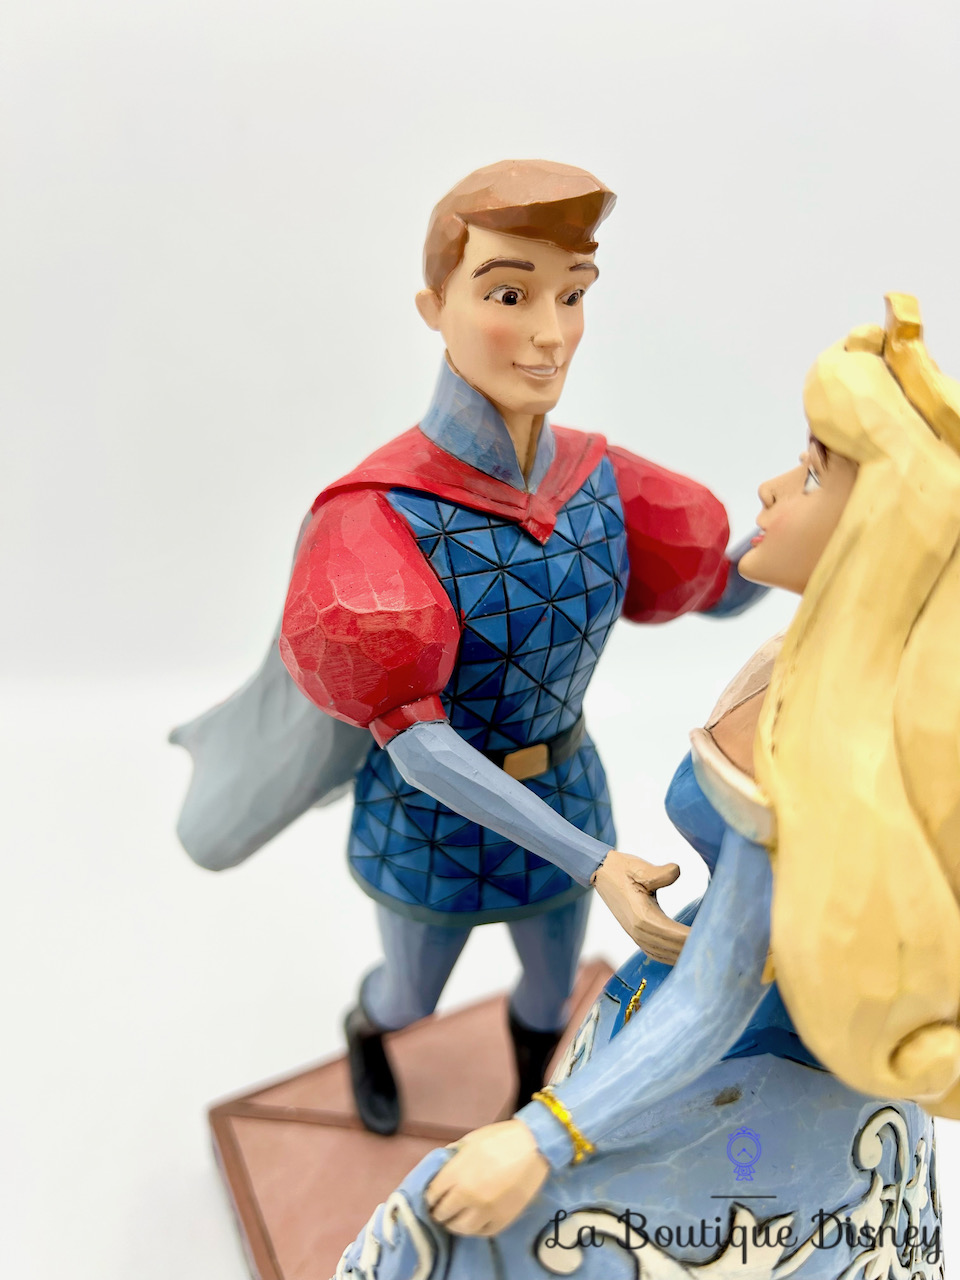 Figurine de Collection Disney Traditions La Belle et le clochard